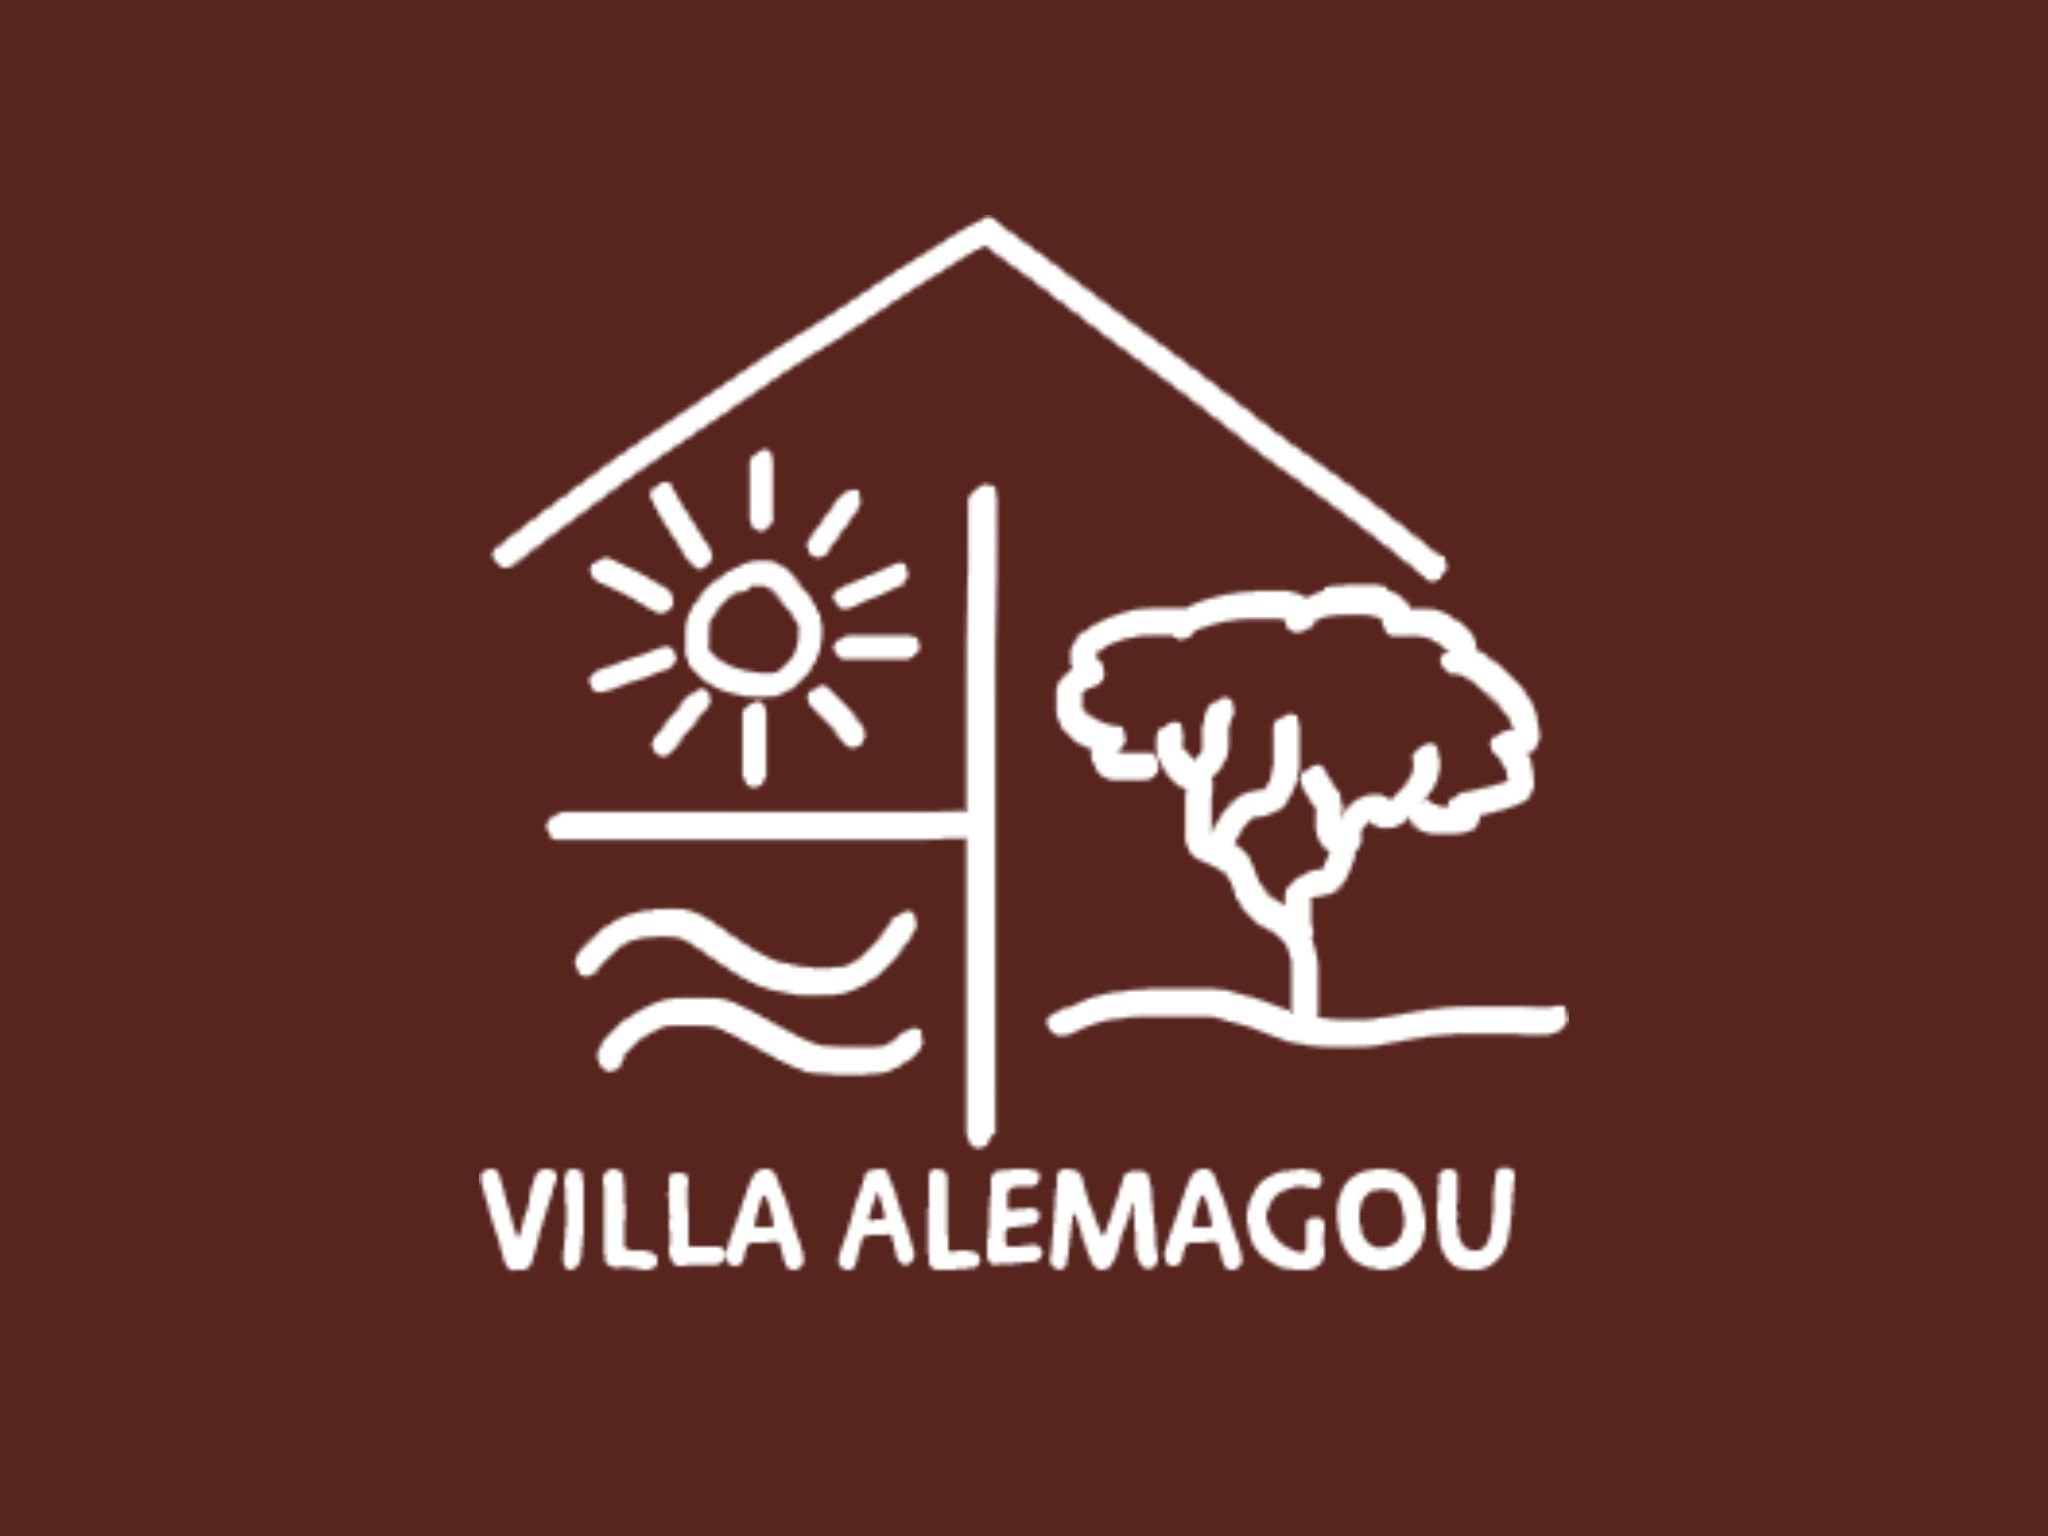  Logo Villa Alemagou 7